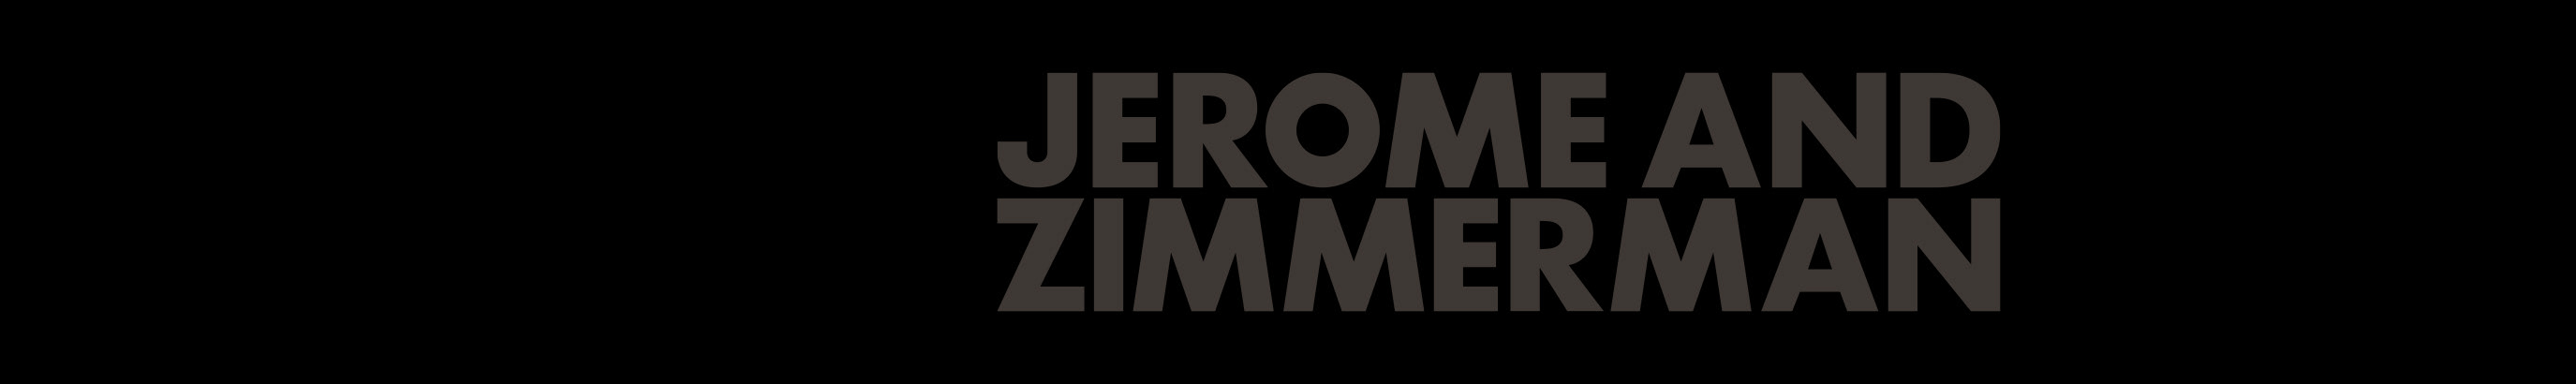 Banner profilu uživatele Jerome & Zimmerman